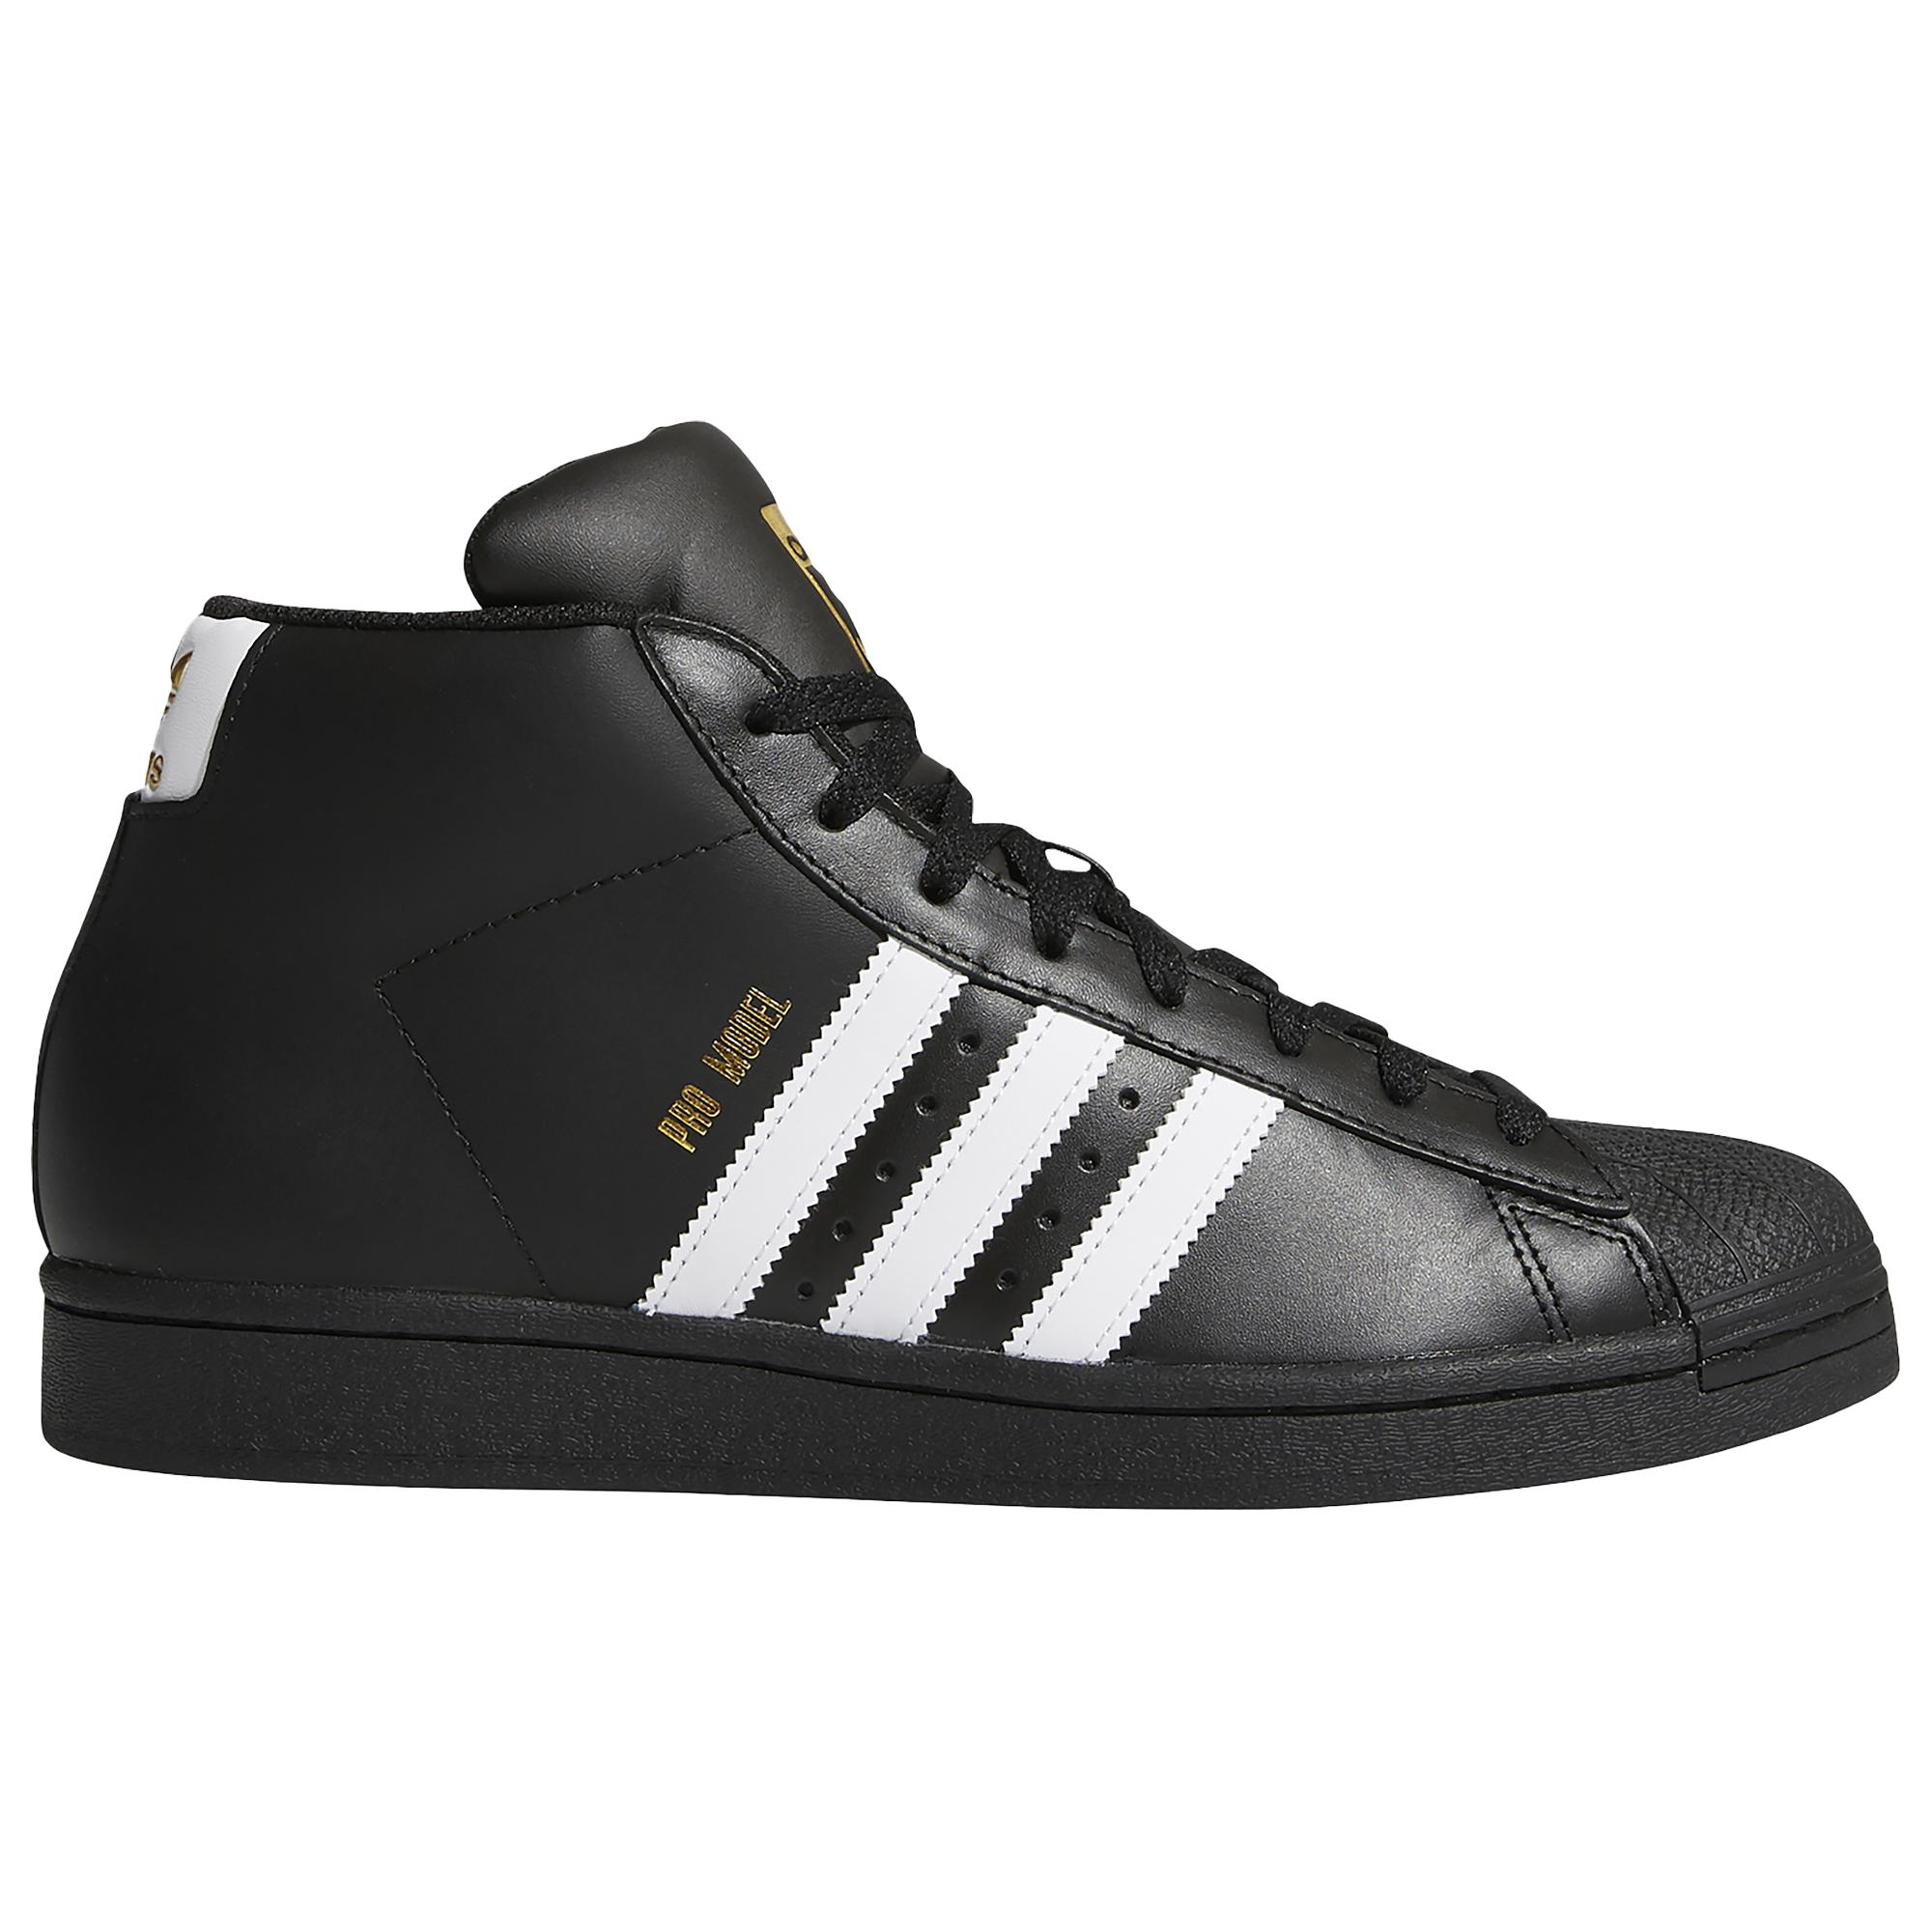 adidas Originals Pro Model - Shoes in Black/Black/Black (Black) for Men -  Save 50% | Lyst